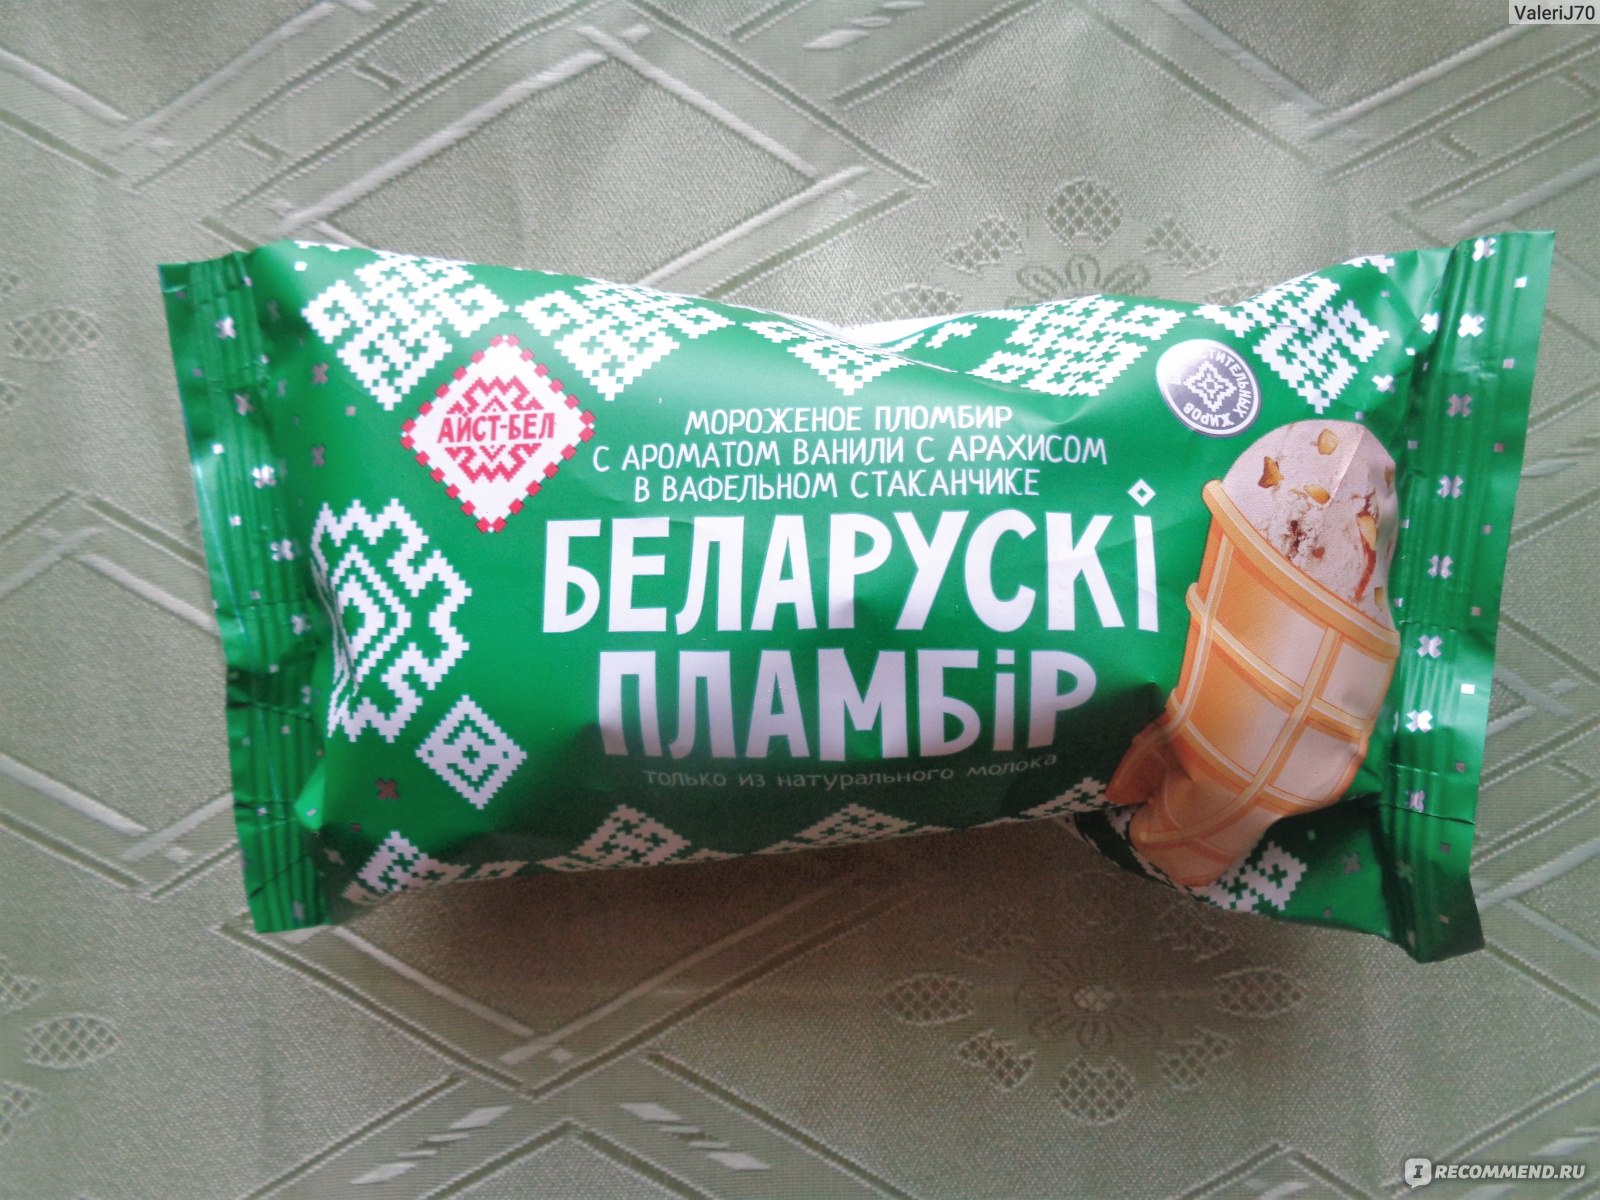 Мороженое Из Белоруссии